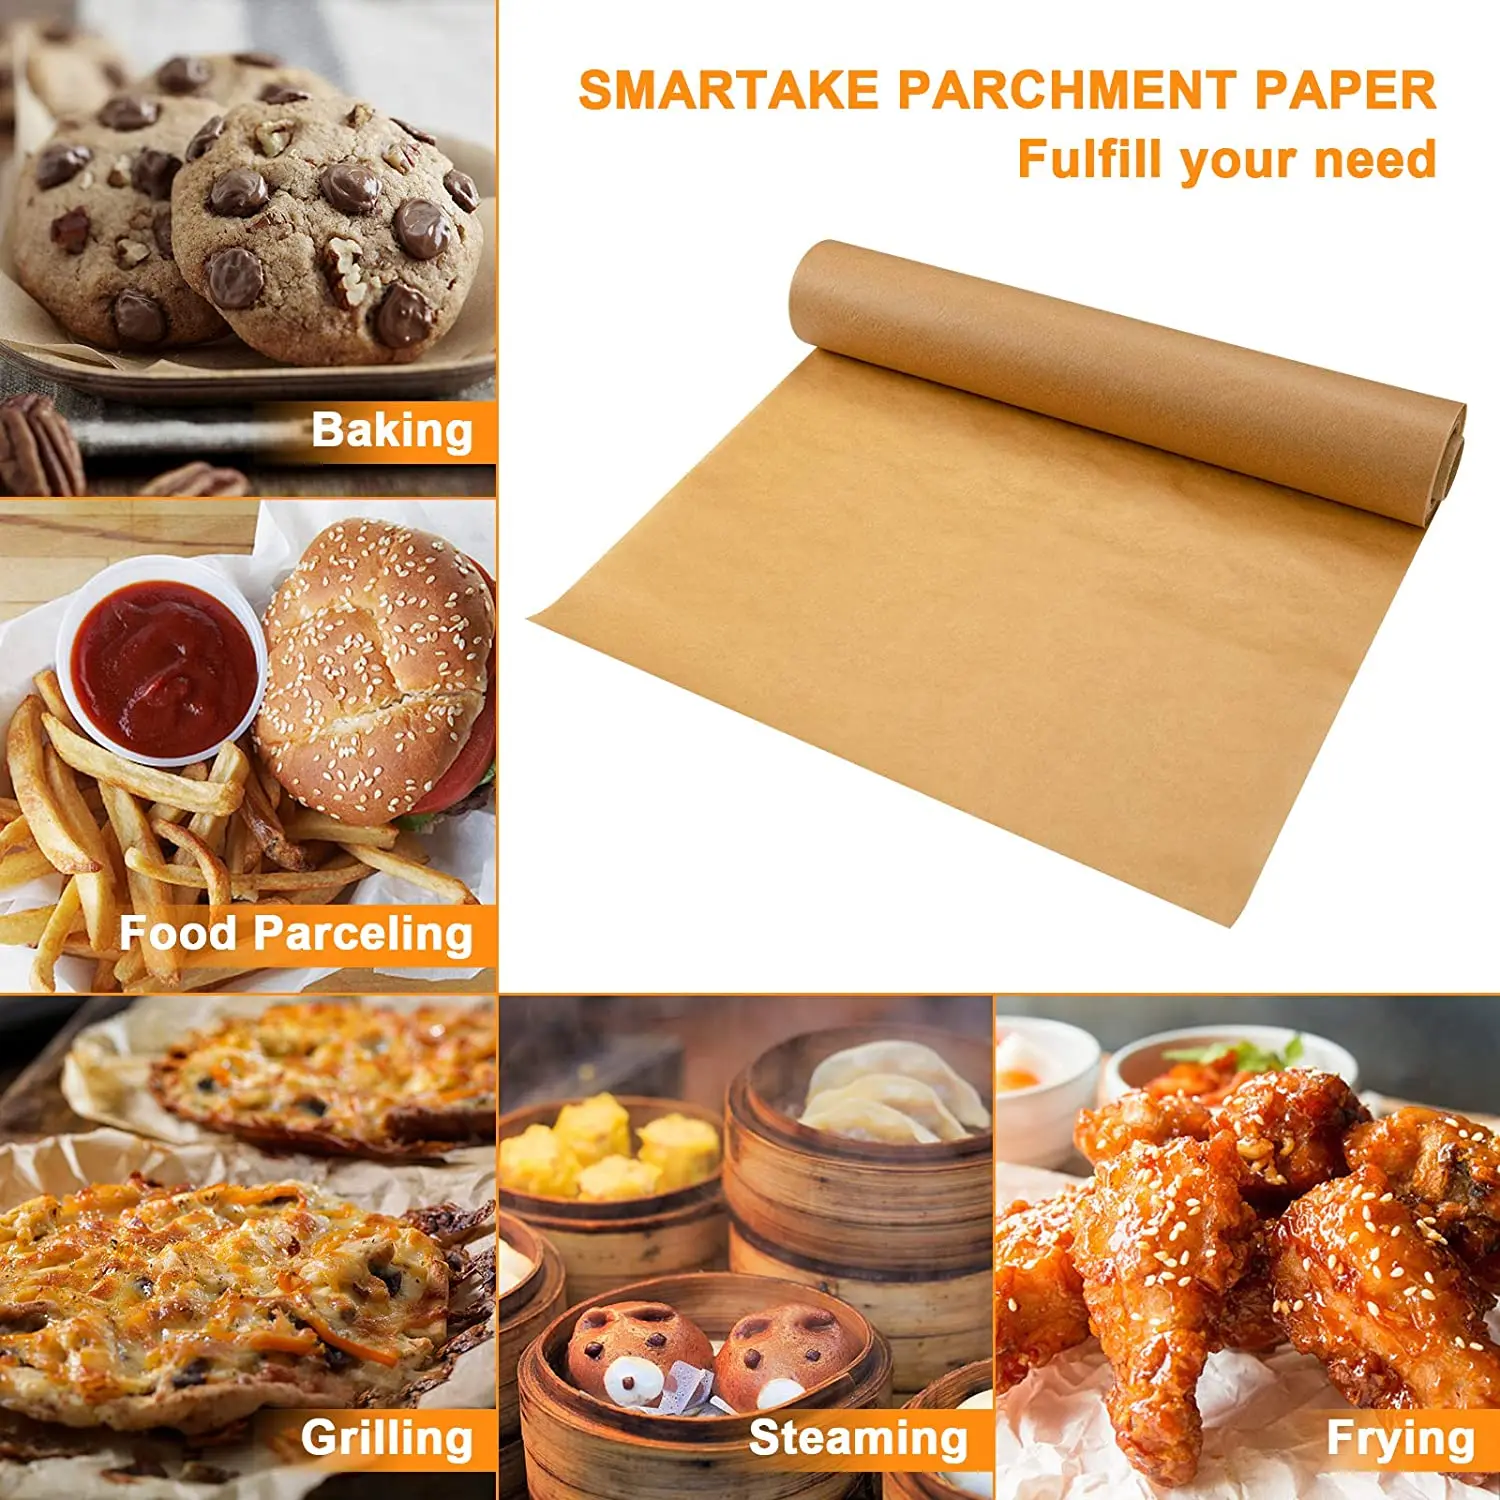 Katbite 500 Pcs Parchment Paper, 16x24 Inches Baking Paper, Heavy Duty & Non-Stick Parchment Paper Sheets, Pre-Cut Parchment Paper Baking Sheets Is